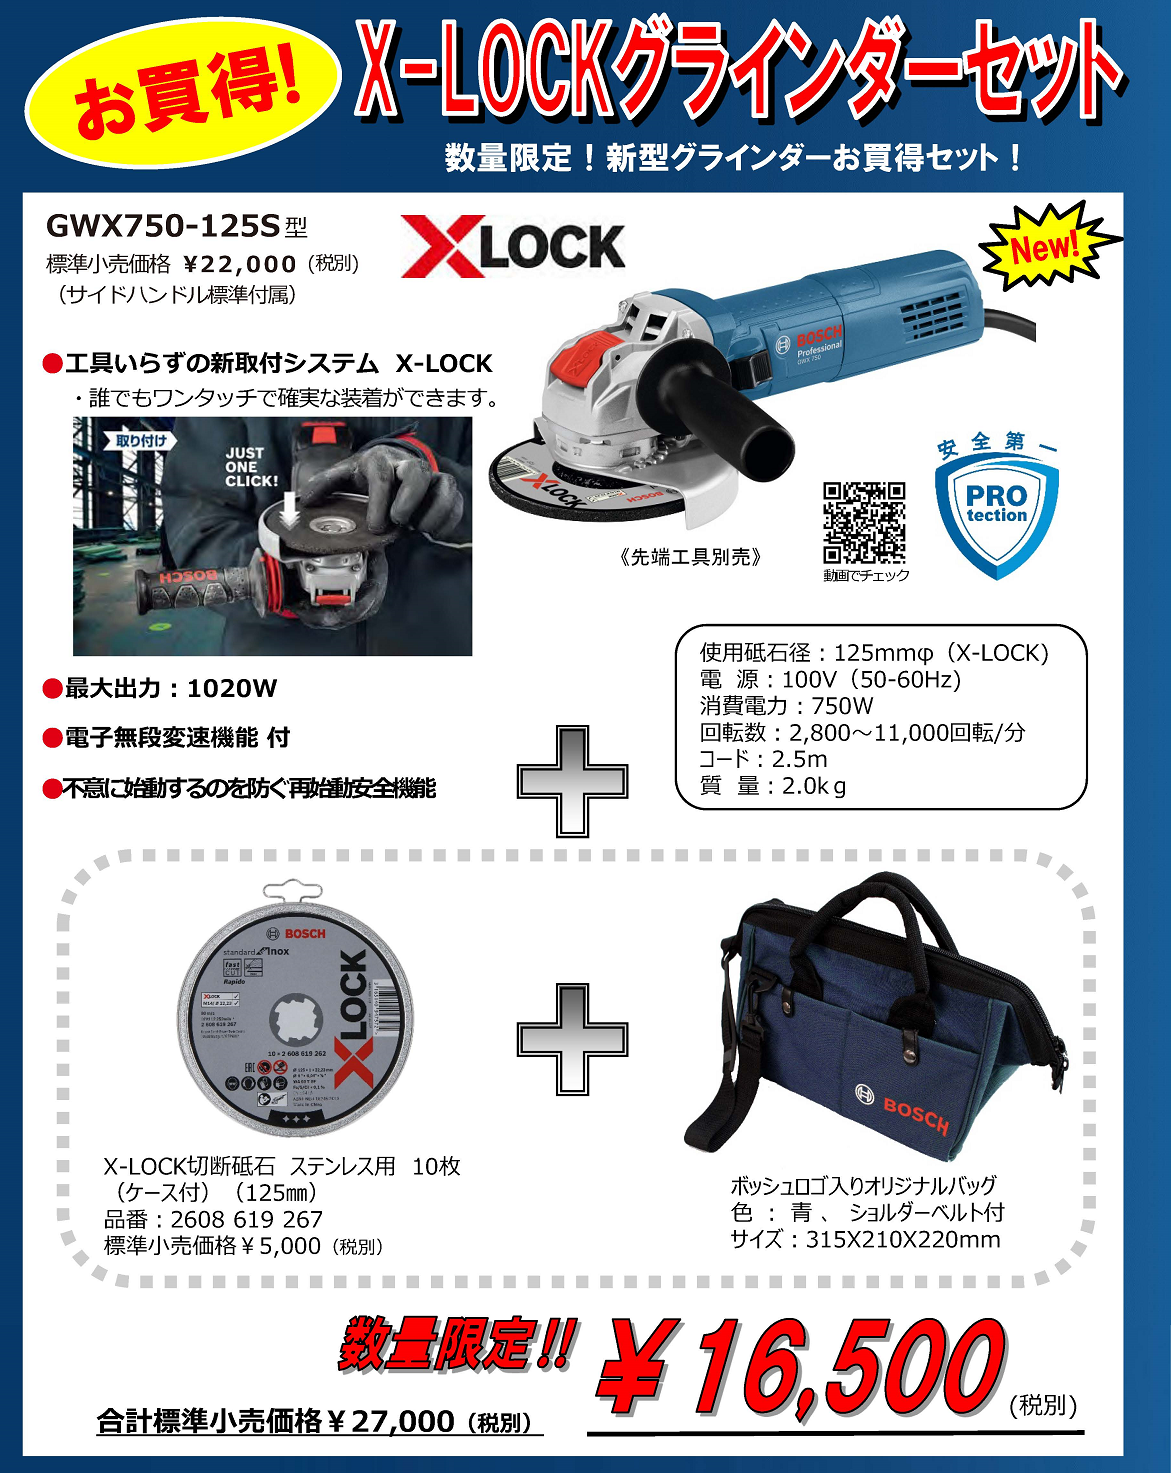 ディスクグラインダー X-LOCK GWX750-125S Professional【ボッシュ